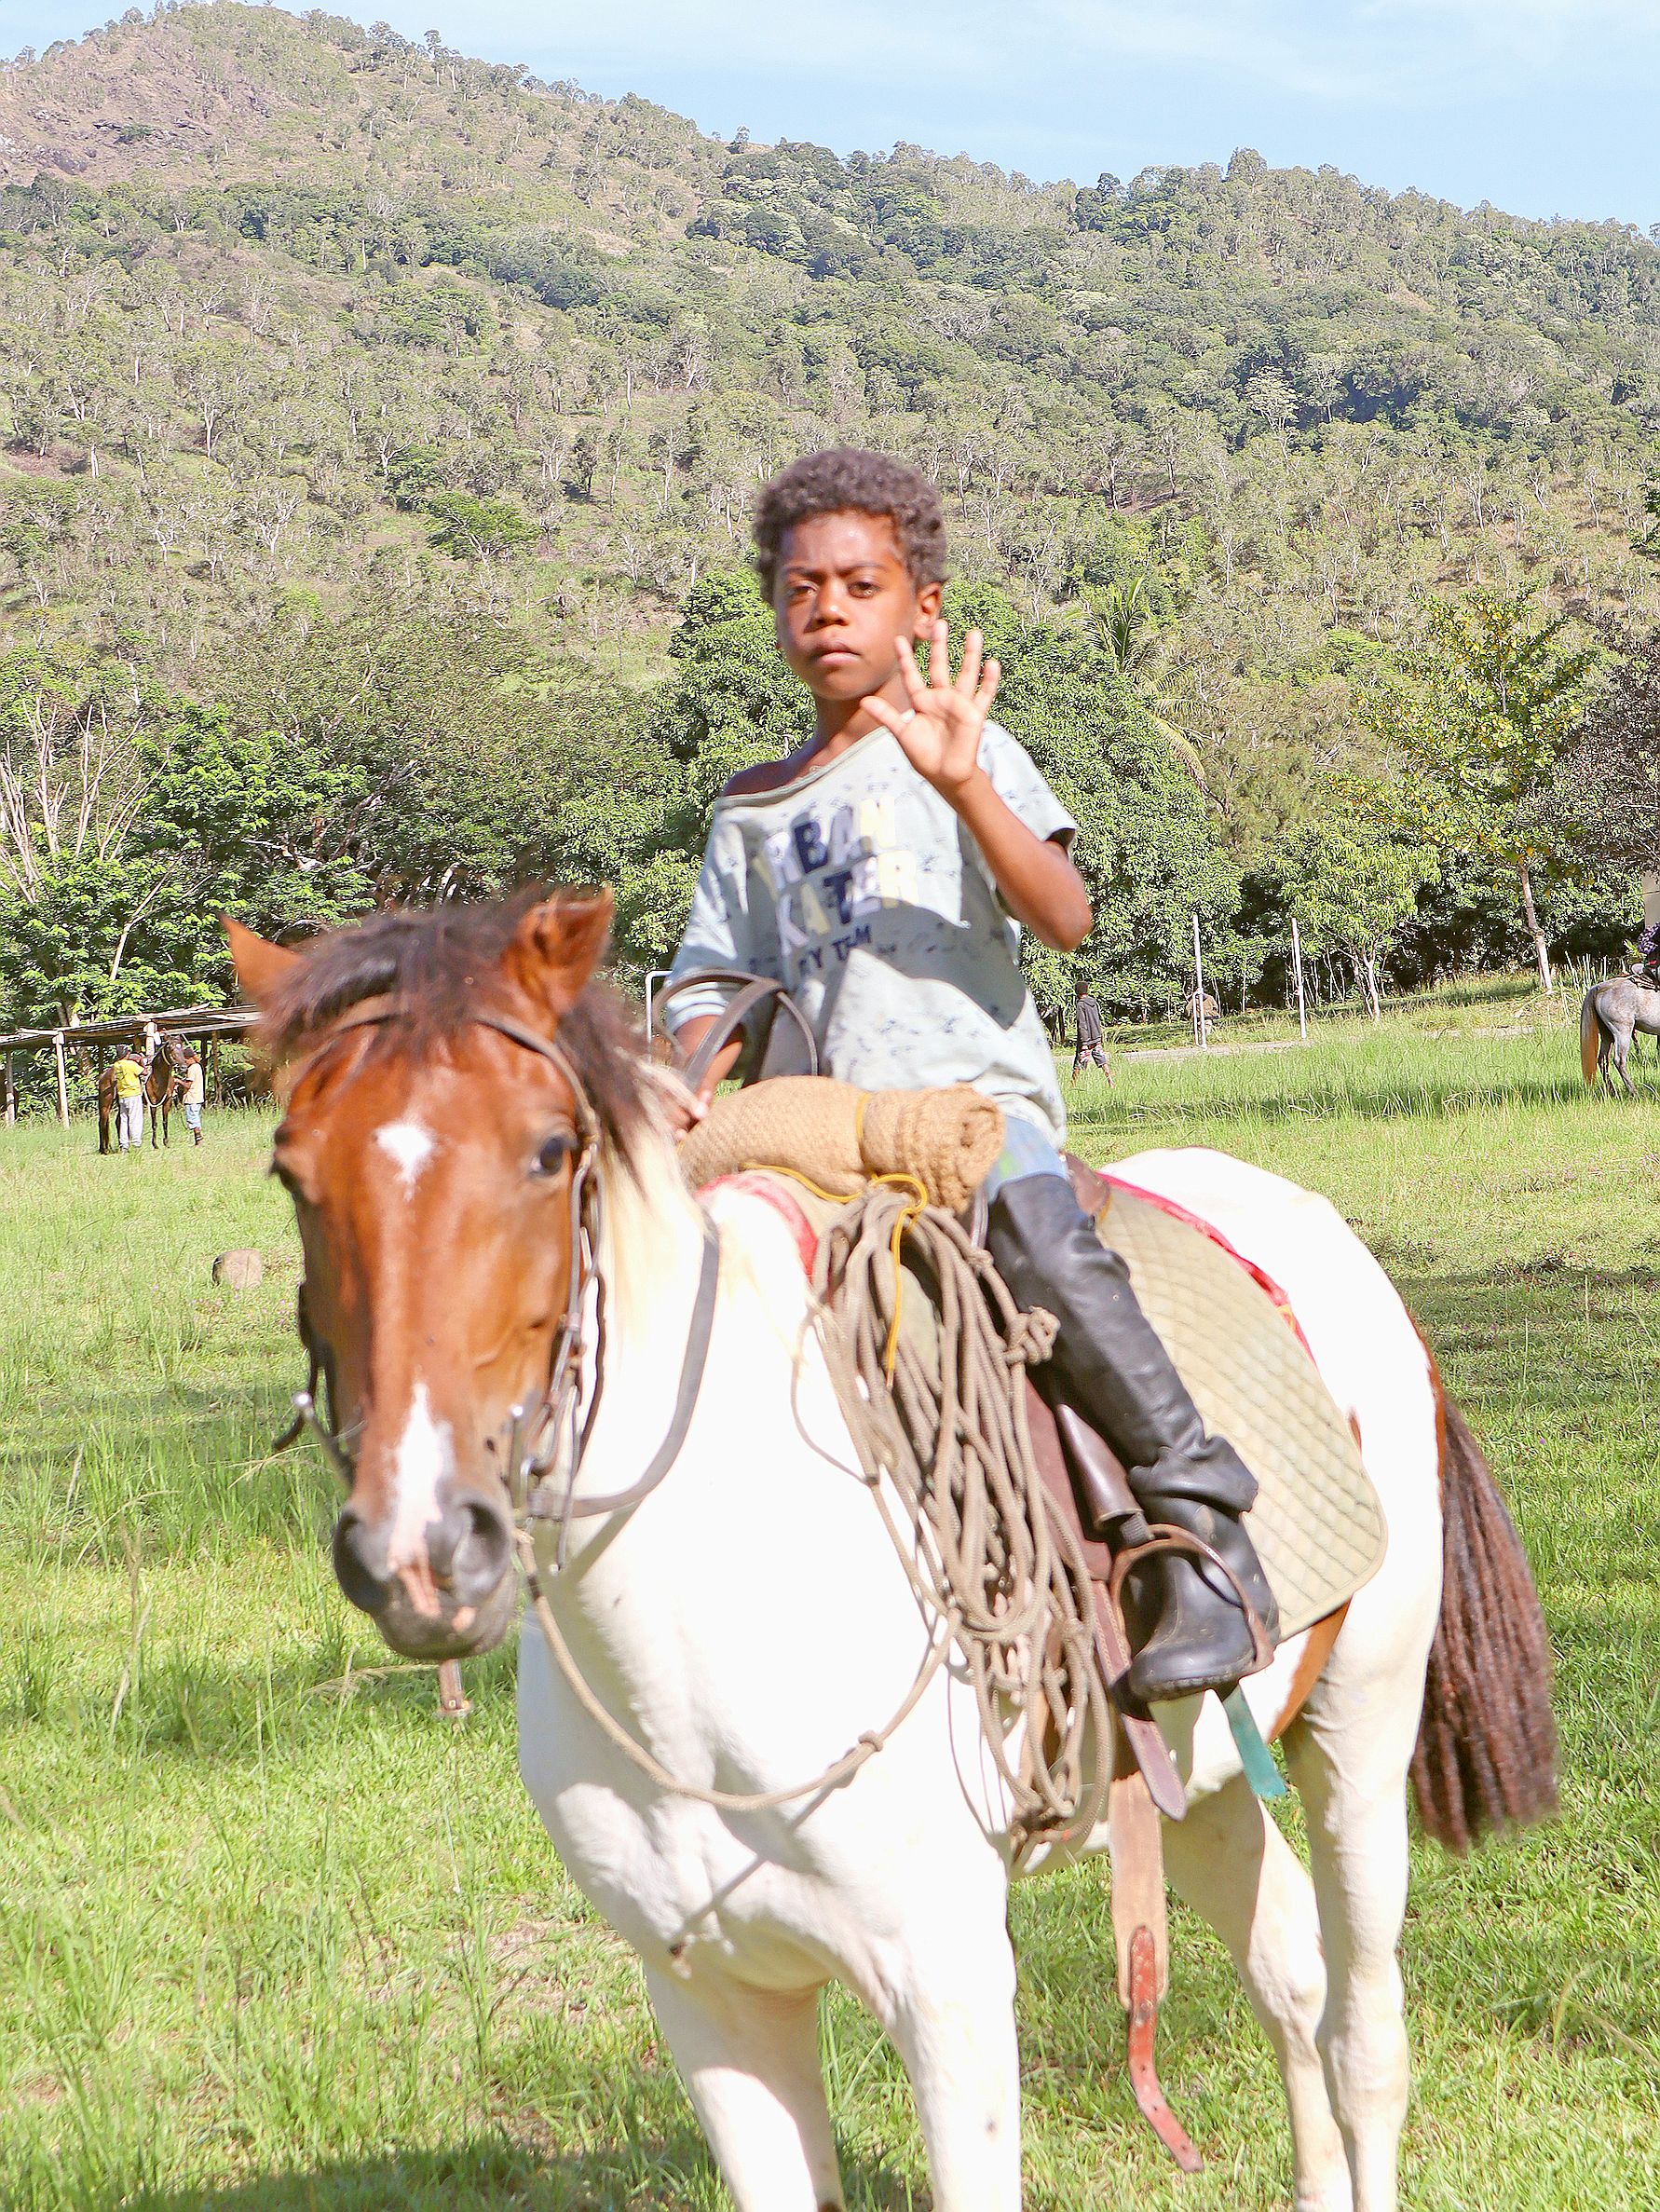 Evraim, la mascotte du camp. Il a 6 ans et il monte à cheval depuis qu’il a 5 ans avec son grand-père Abel Euribéari, accompagnateur équestre et propriétaire des chevaux.